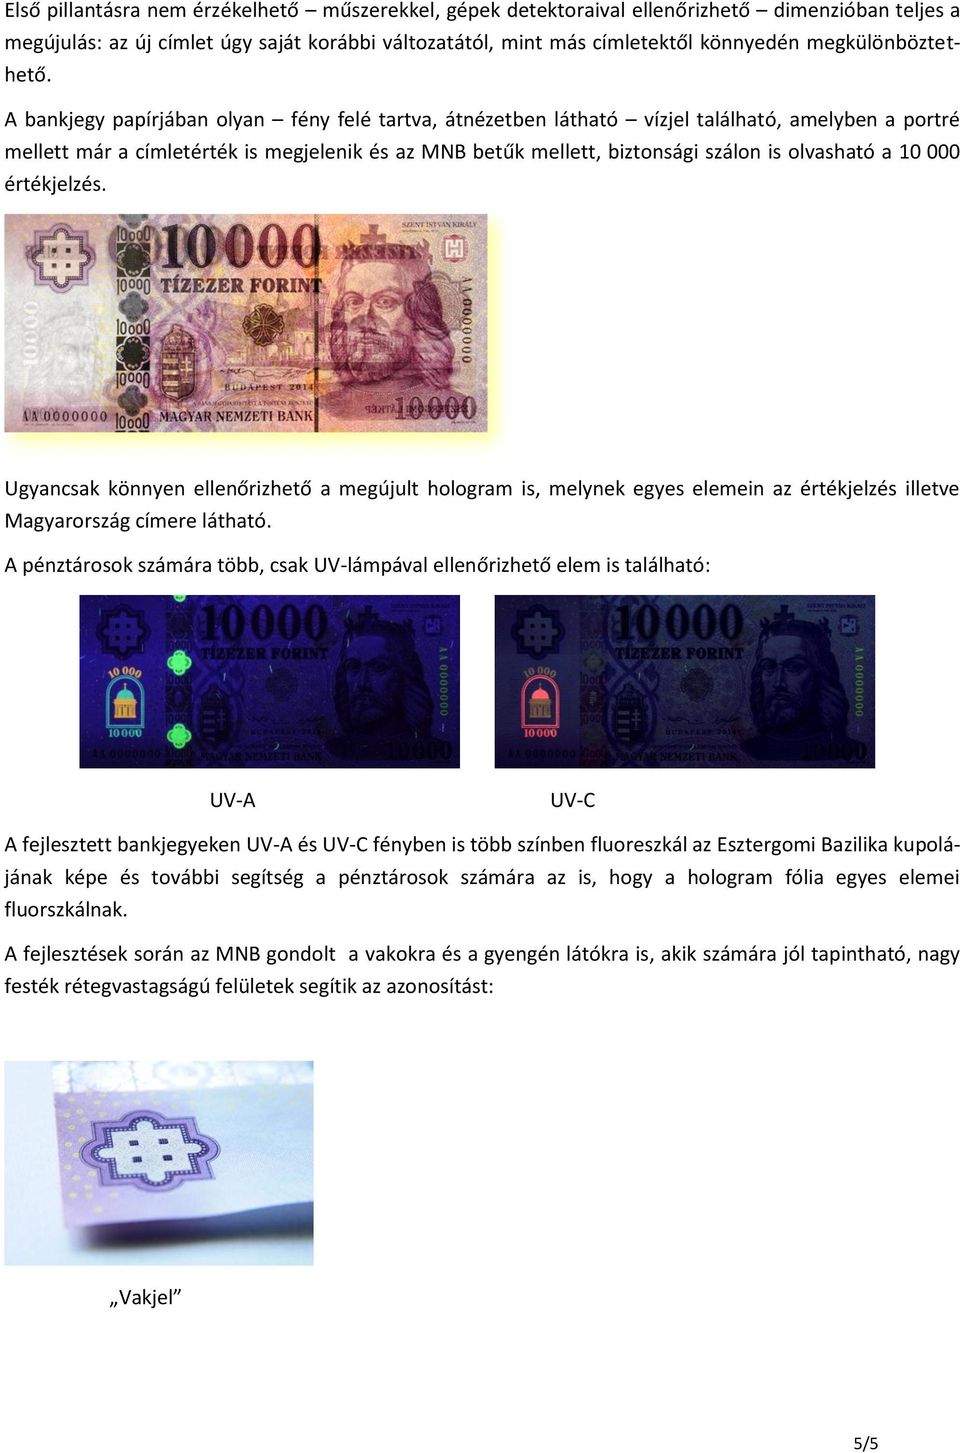 A bankjegy papírjában olyan fény felé tartva, átnézetben látható vízjel található, amelyben a portré mellett már a címletérték is megjelenik és az MNB betűk mellett, biztonsági szálon is olvasható a